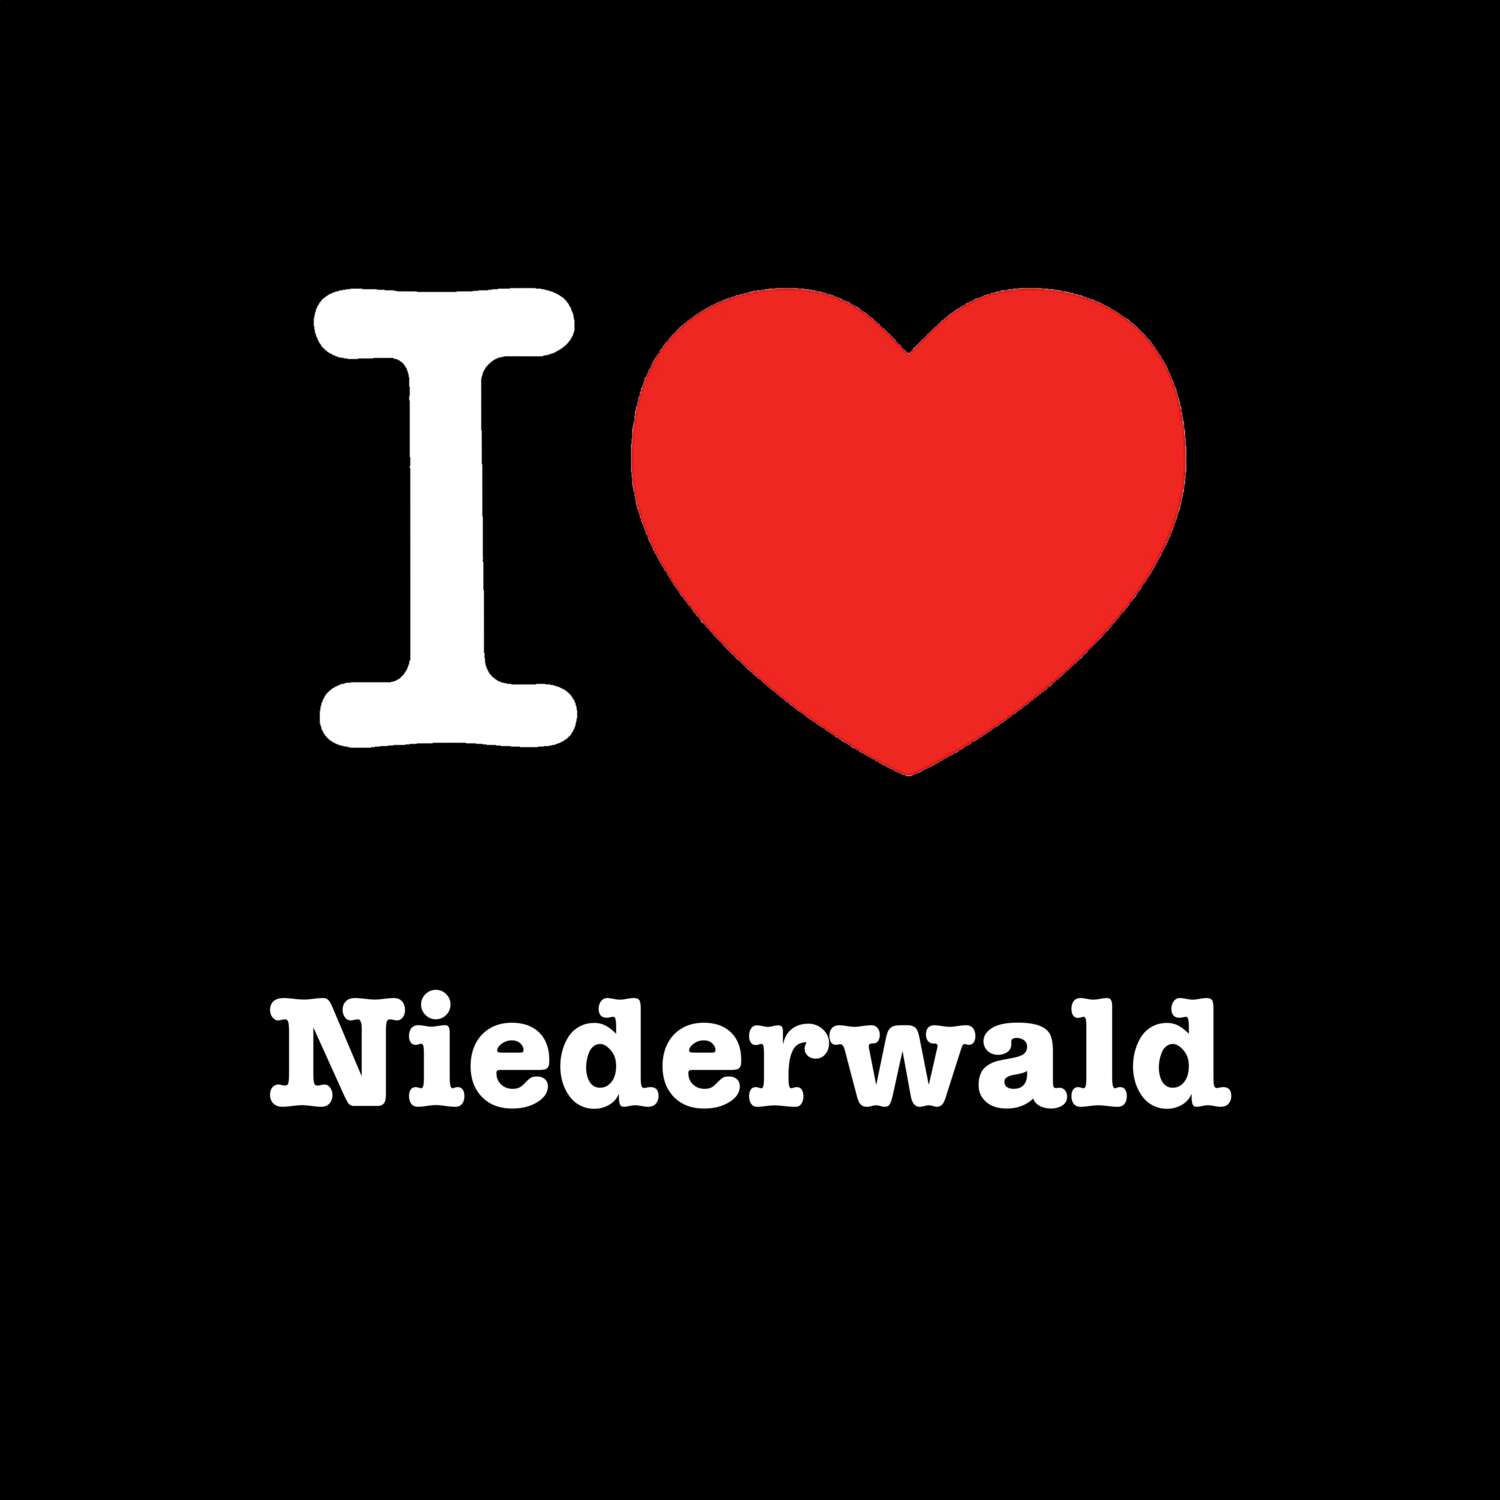 Niederwald T-Shirt »I love«